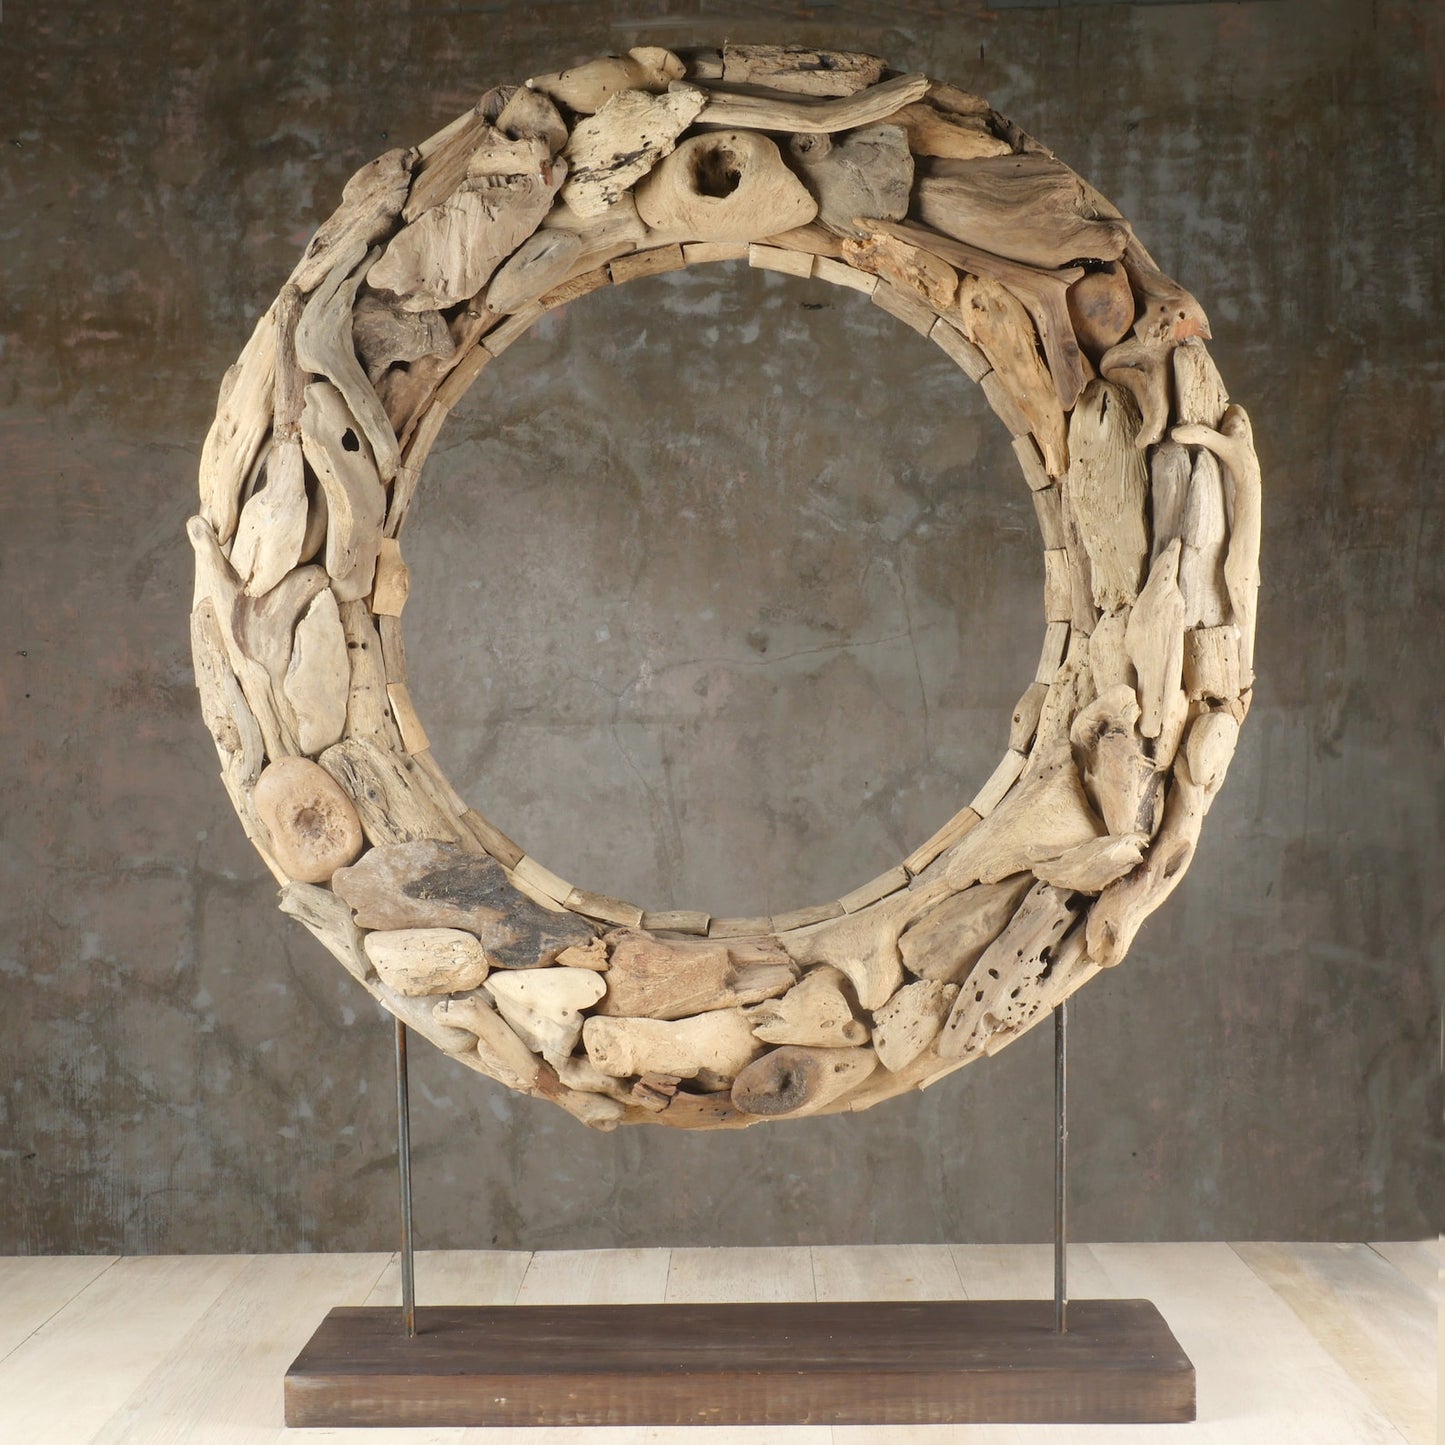 The Driftwood Donut Art Sculpture